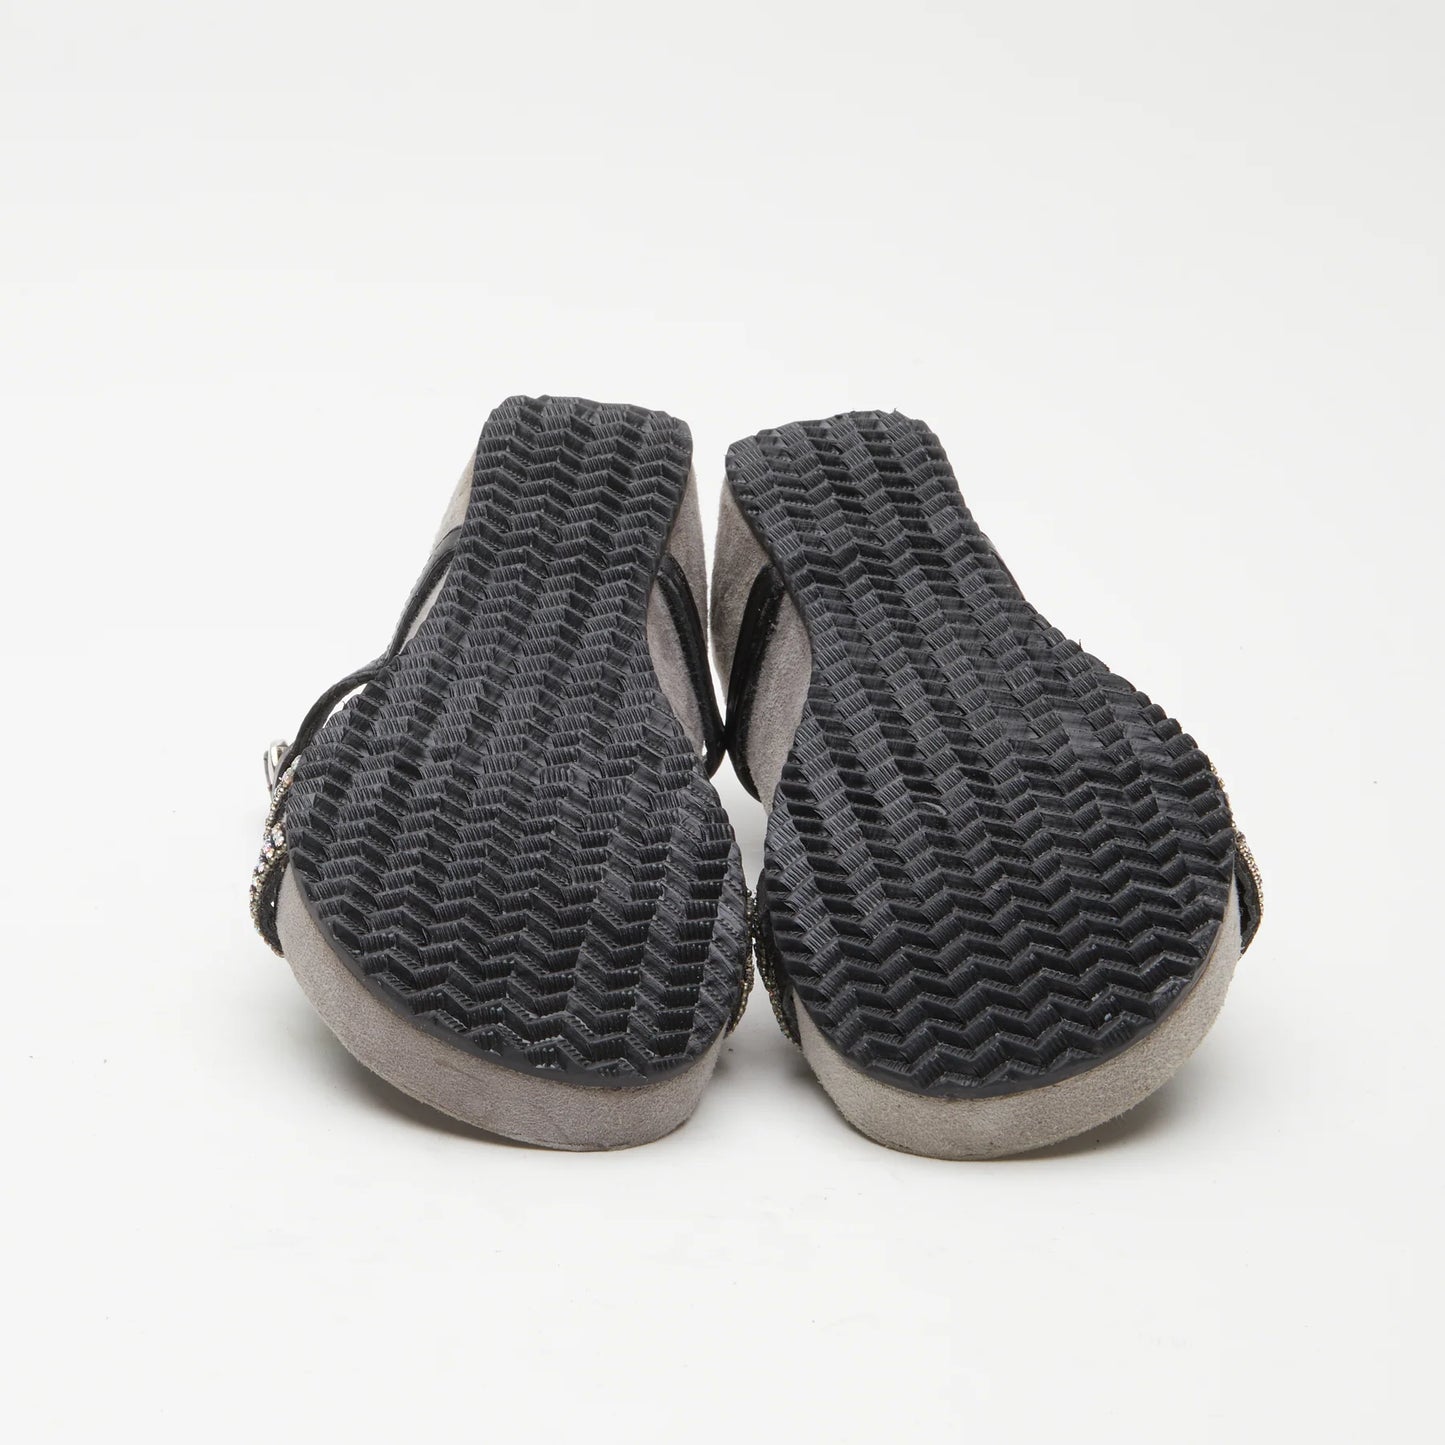 Azura by Spring Step Women's Stunnin T-Strap Sandals - Black